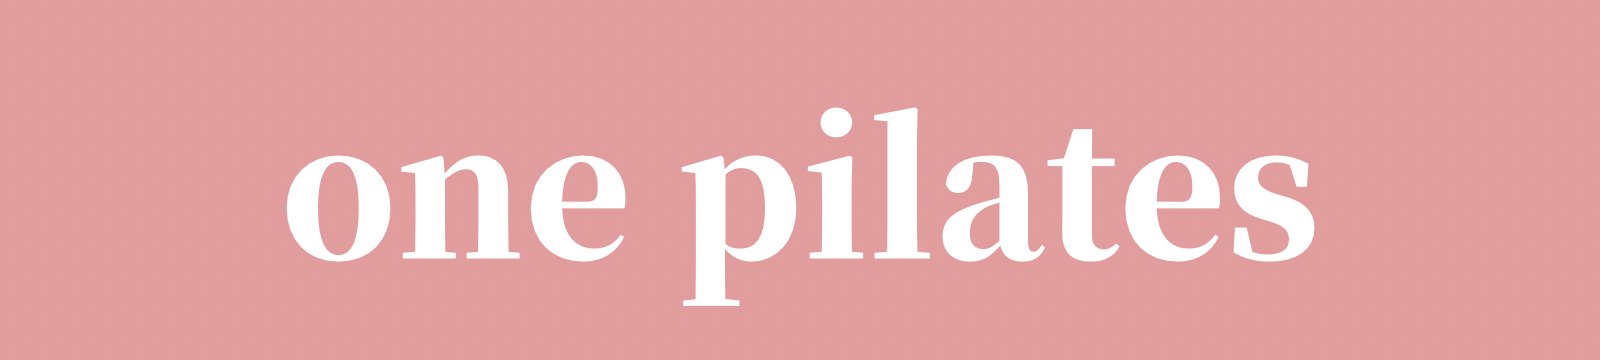 one pilates(ワンピラティス)